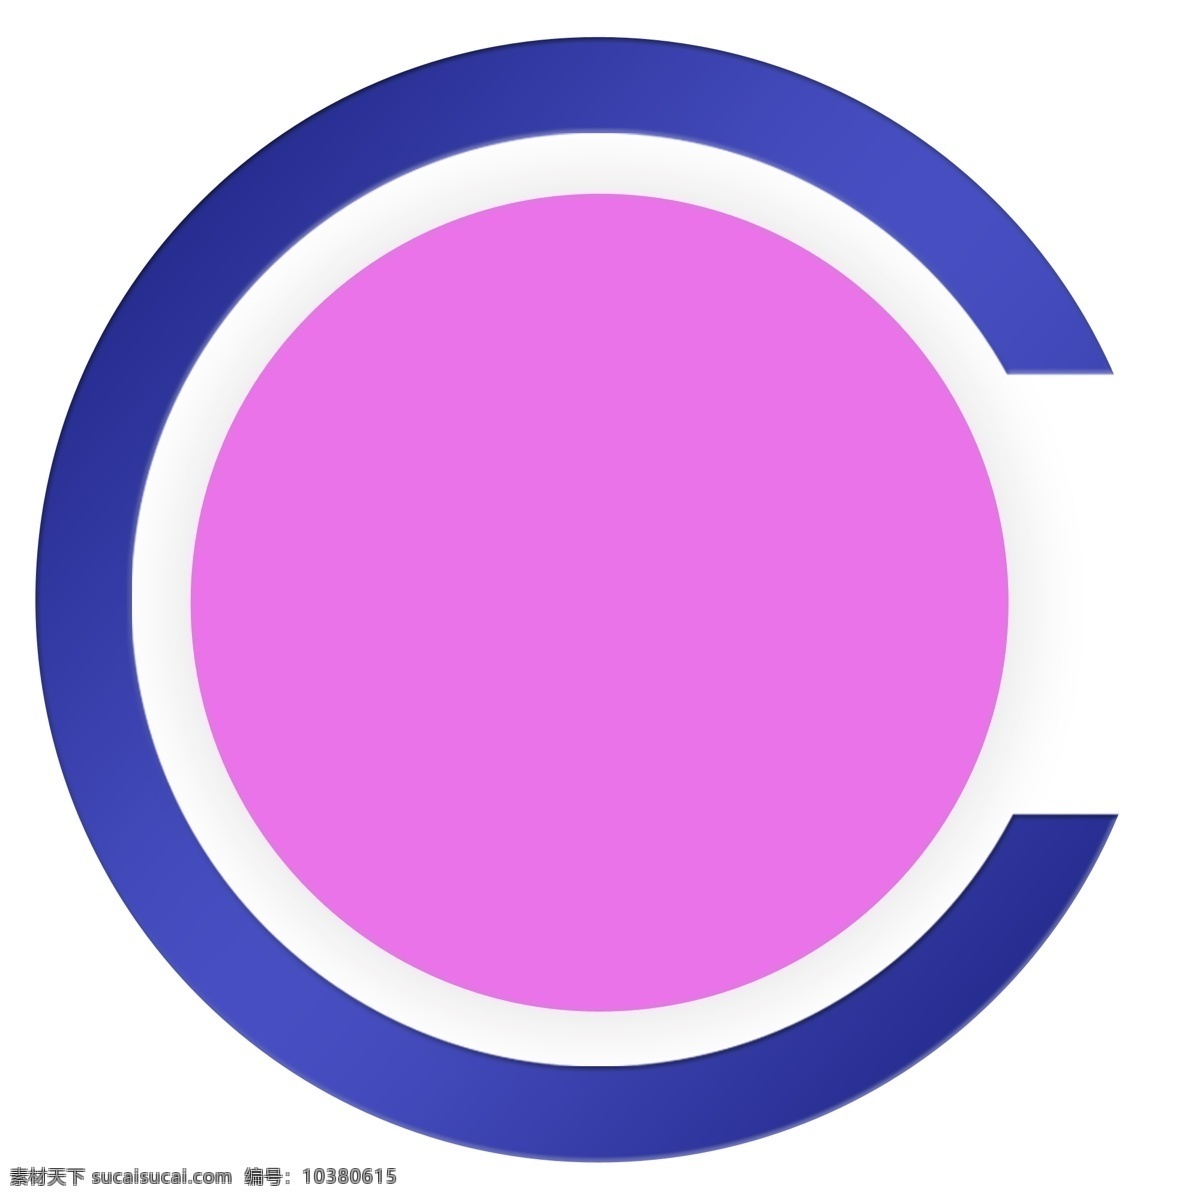 紫色 蓝 圆形 背景 框 蓝边 圆环 背景框 设计素材